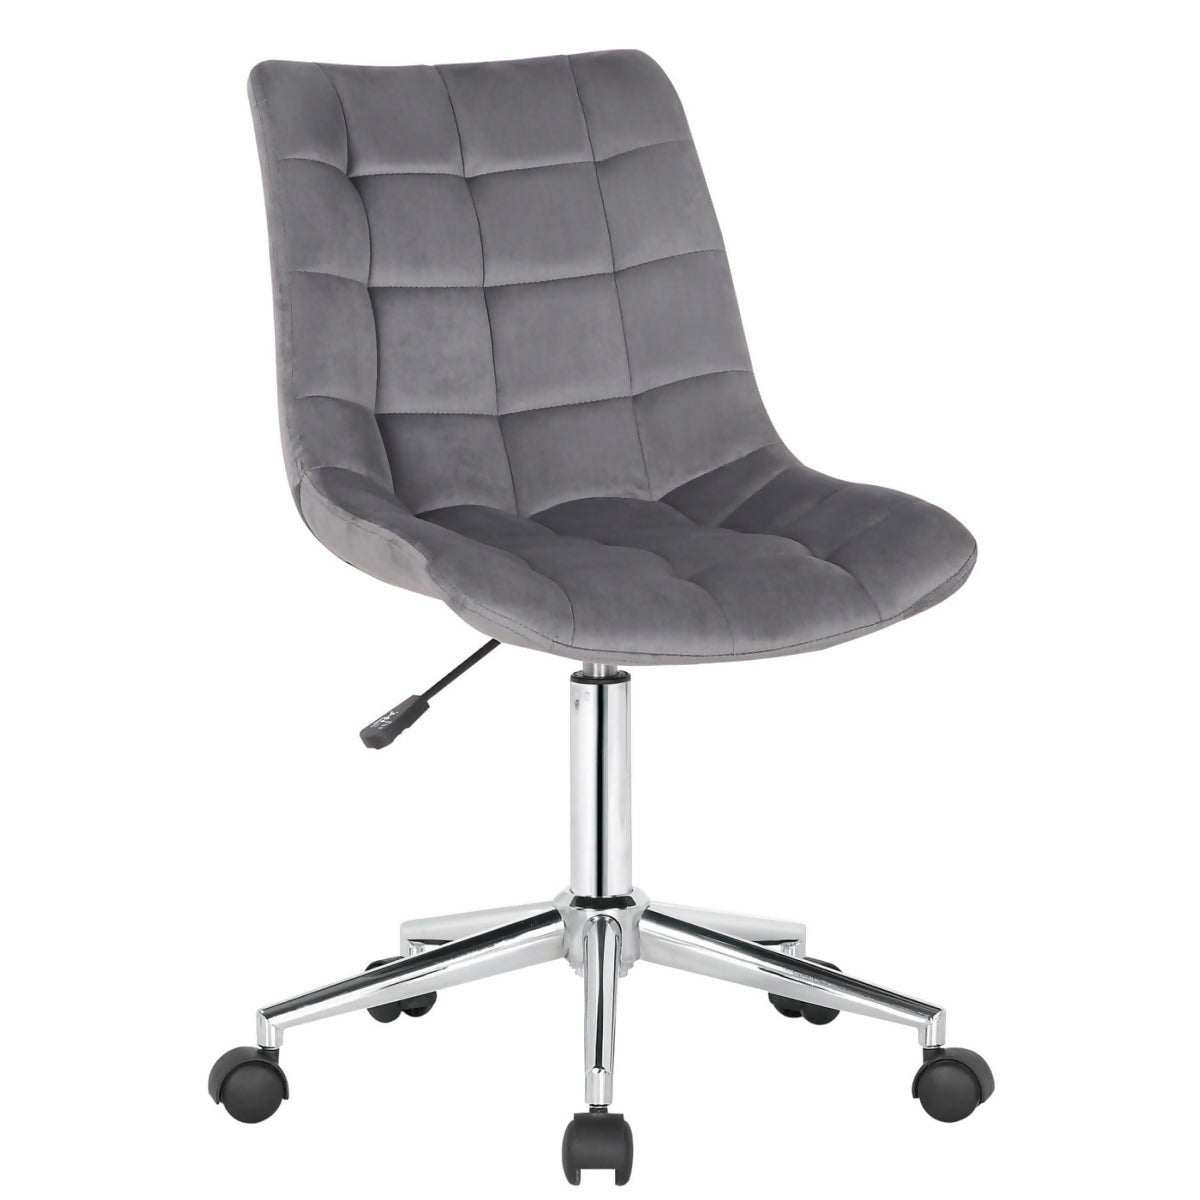 Medford office chair - Gray velvet - 0